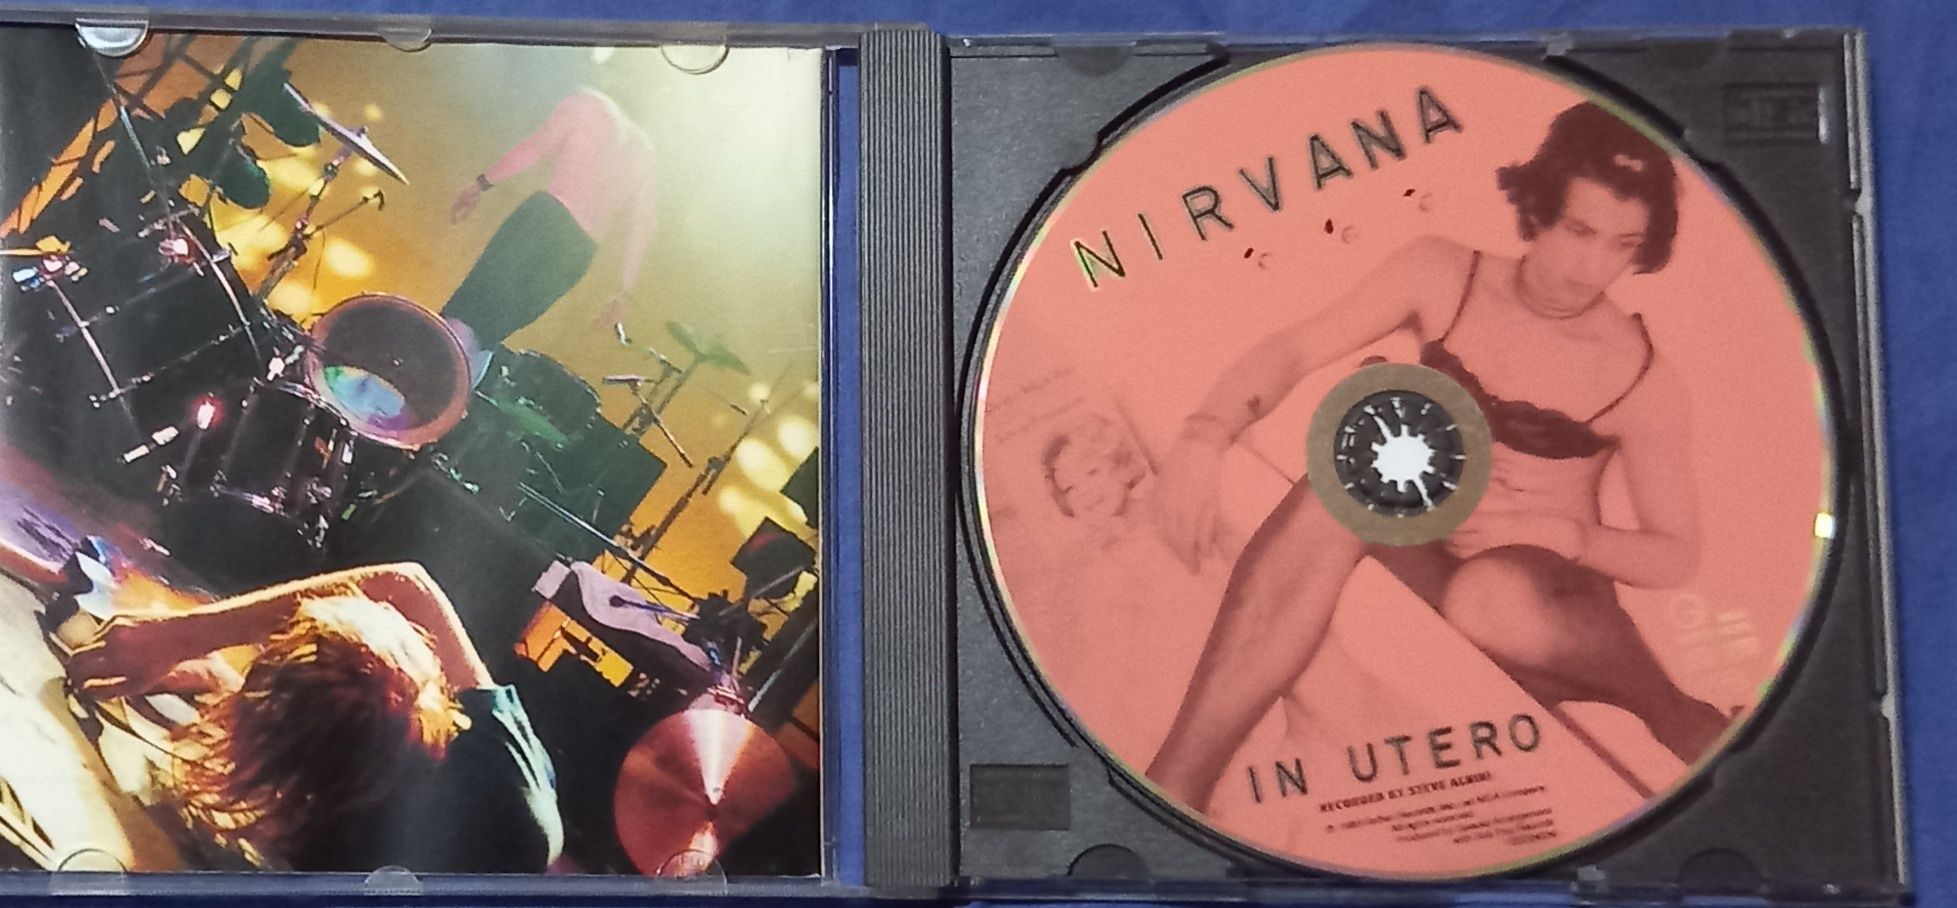 Vendo Cd Nirvana "In Utero"